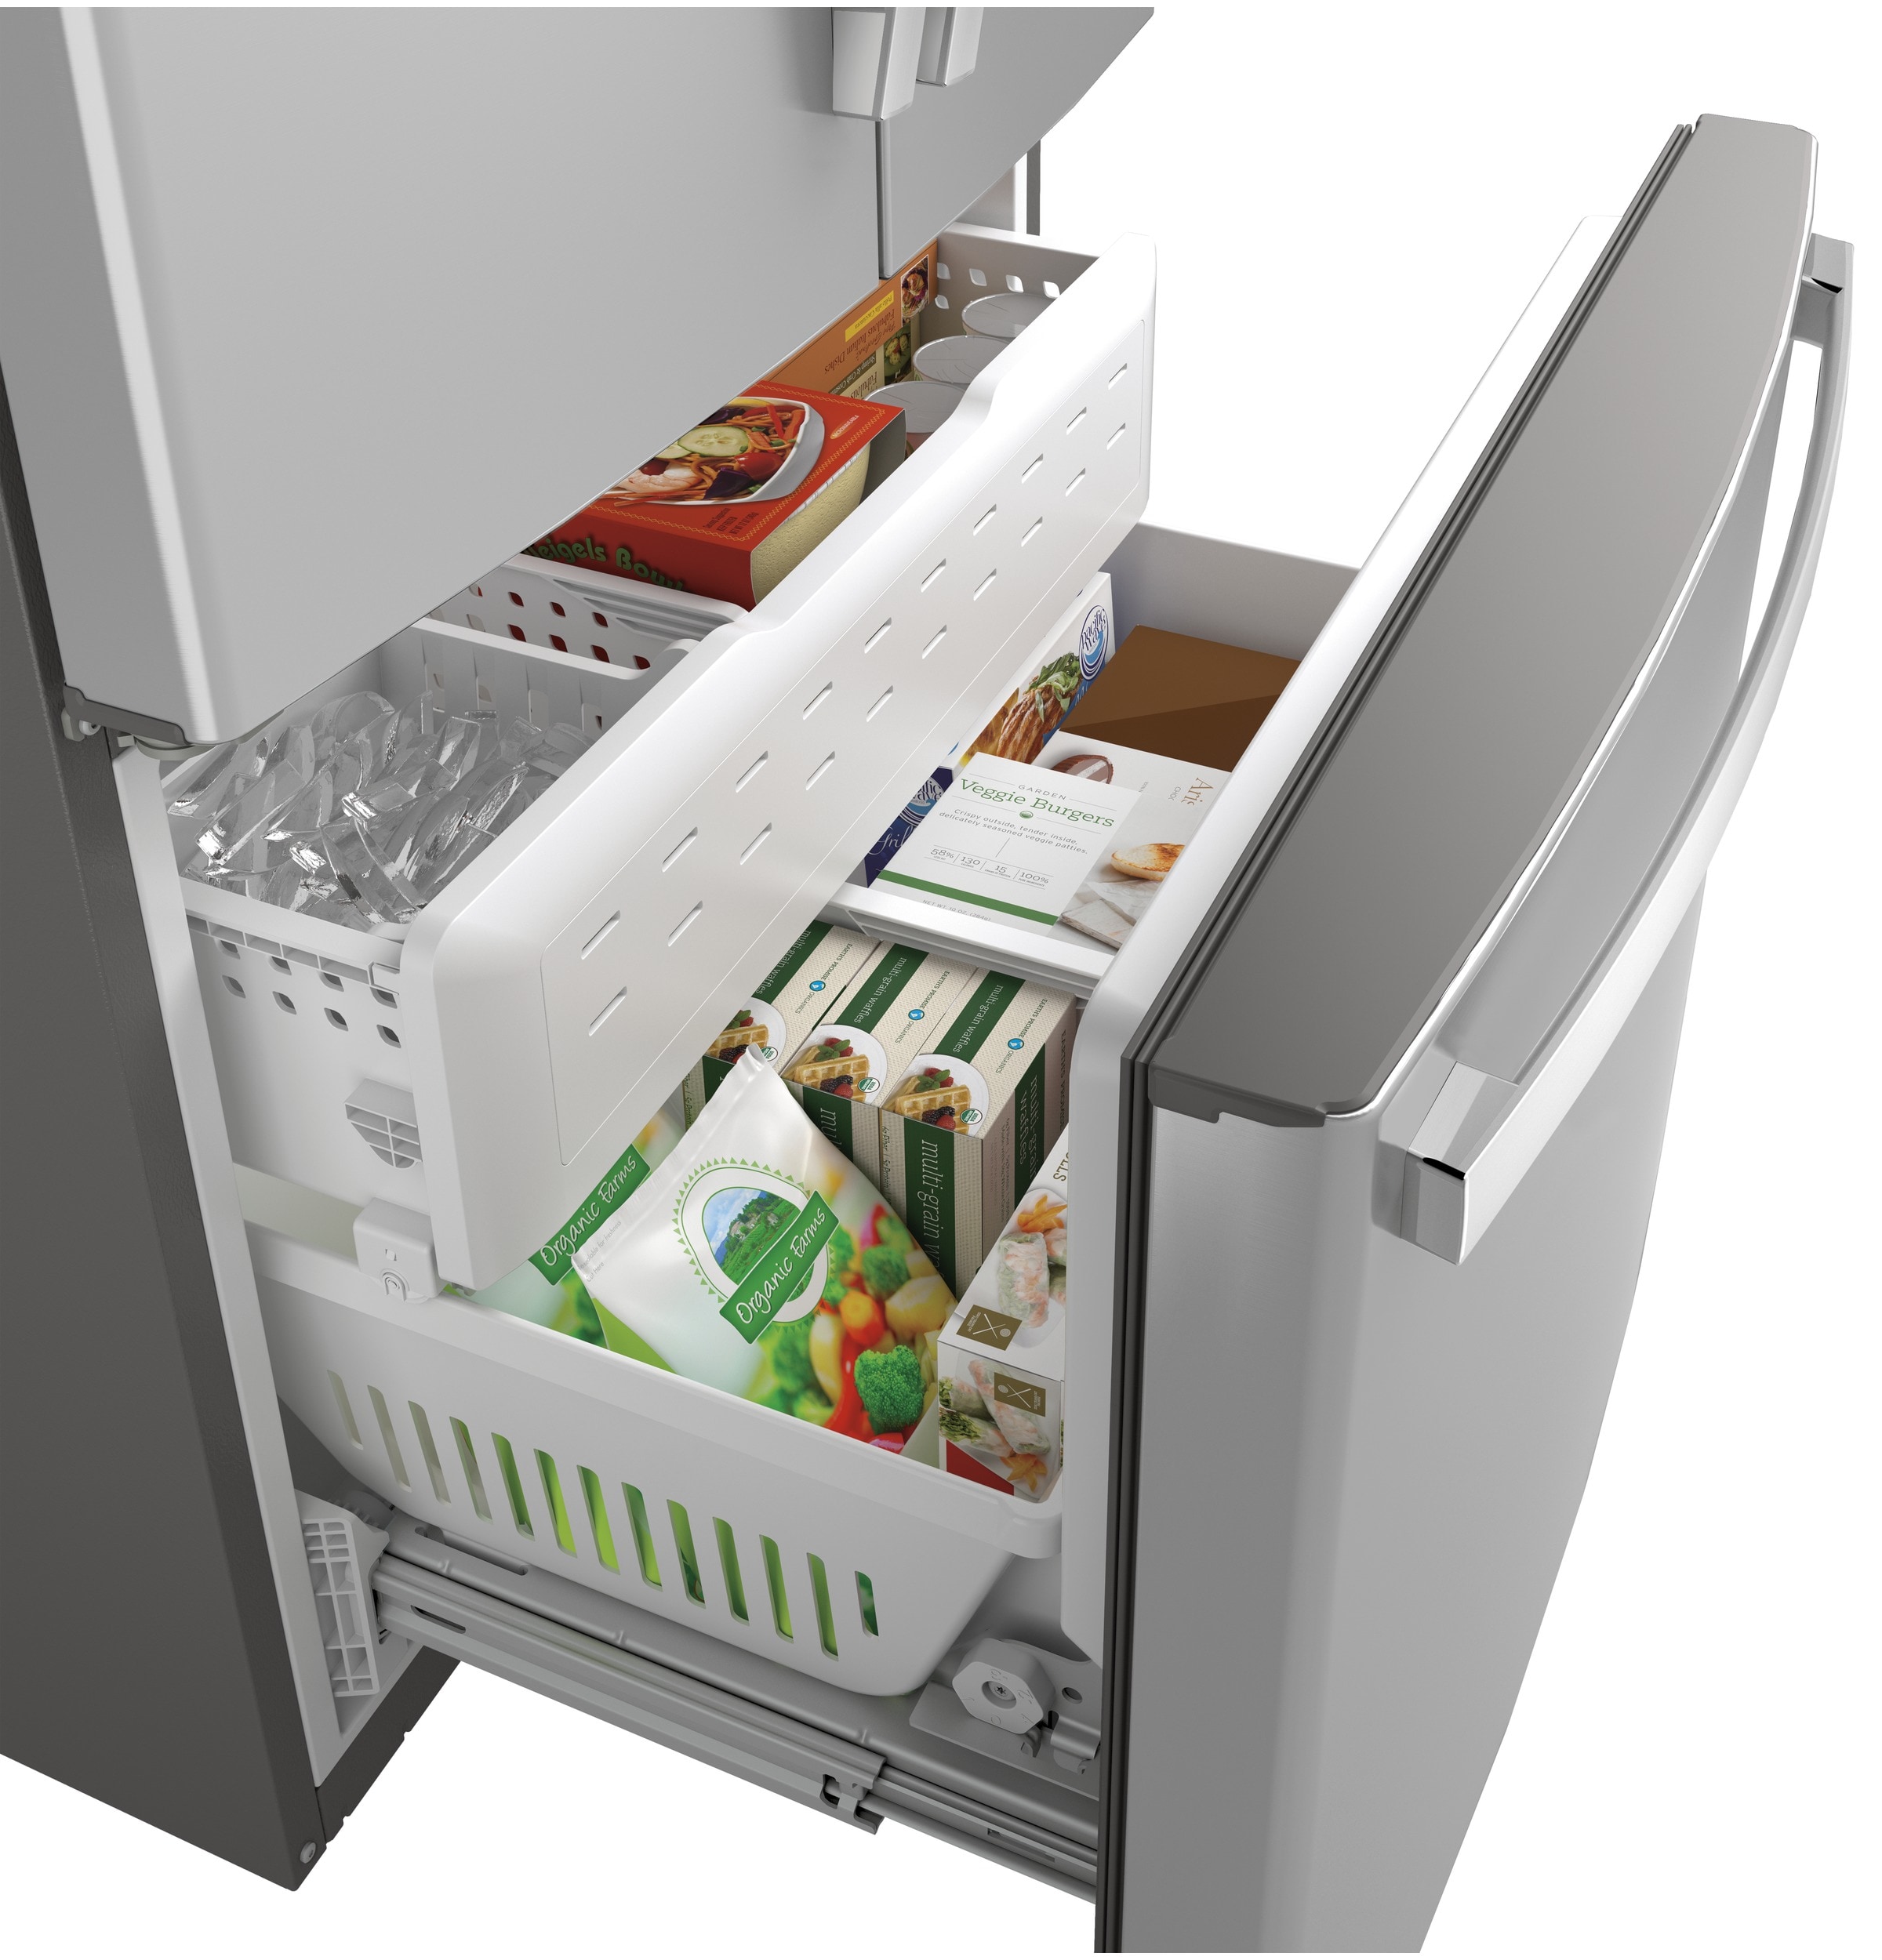 Café™ ENERGY STAR® 27.7 Cu. Ft. Smart French-Door Refrigerator